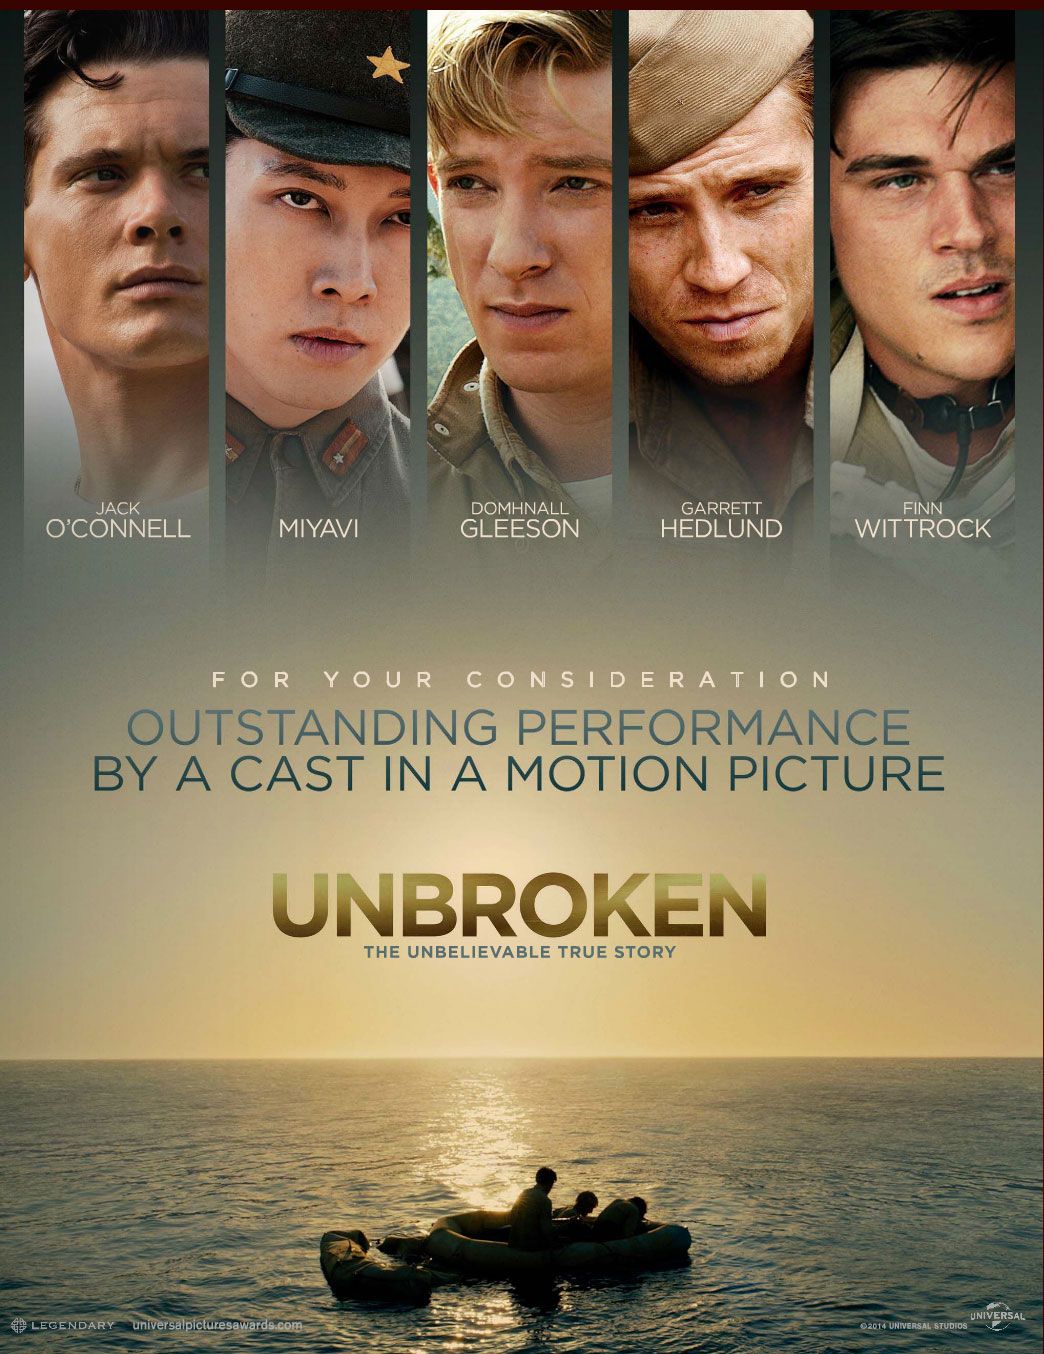 Top phim chiến tranh thế giới thứ 2: Unbroken (2014)